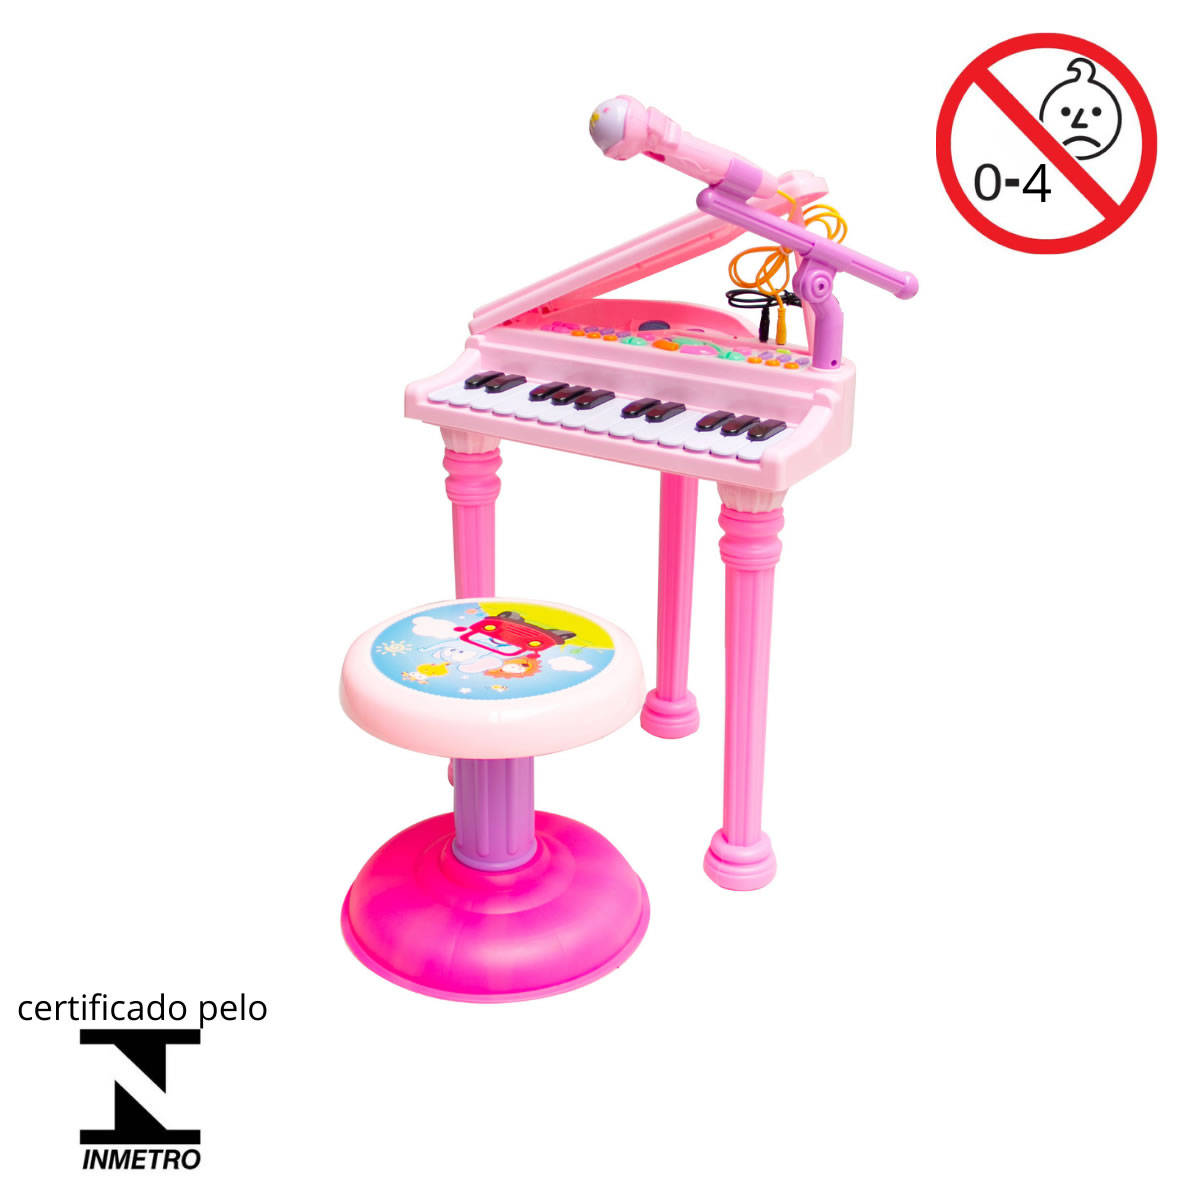 Pakéquis: Reduzindo o volume de um piano infantil